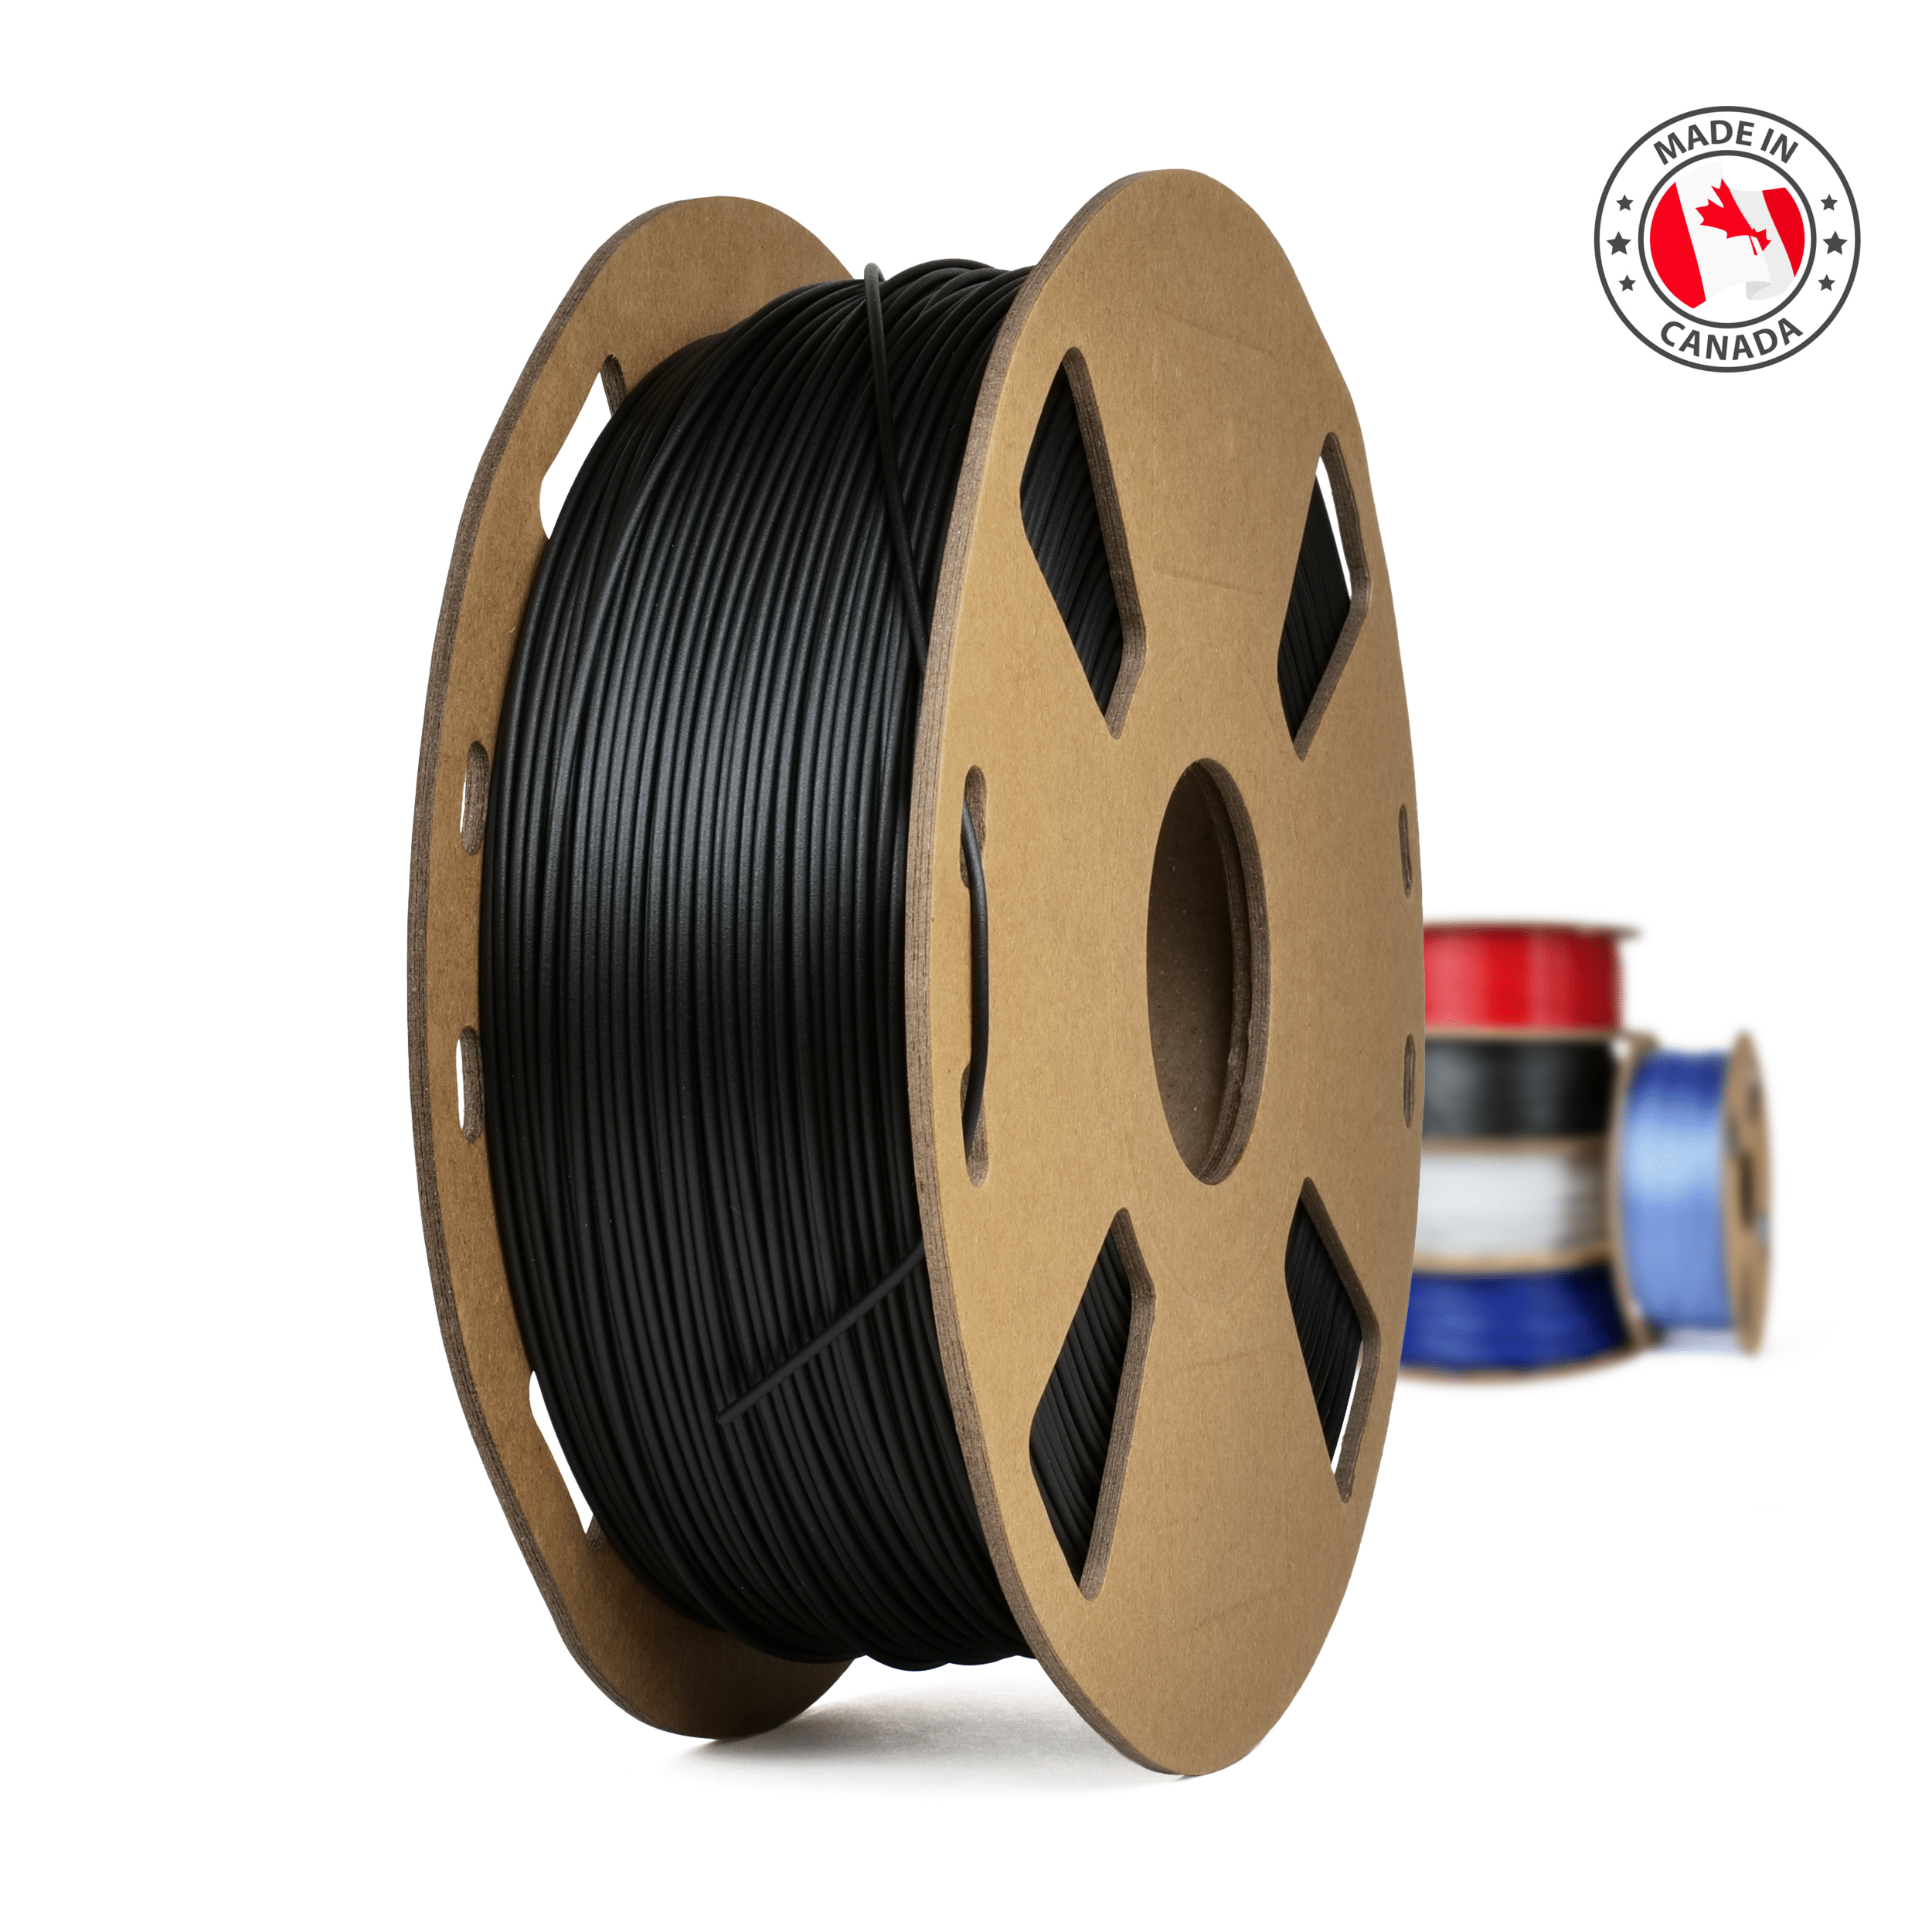 CR-Carbon 1.75mm PLA 3D Printing Filament 1kg